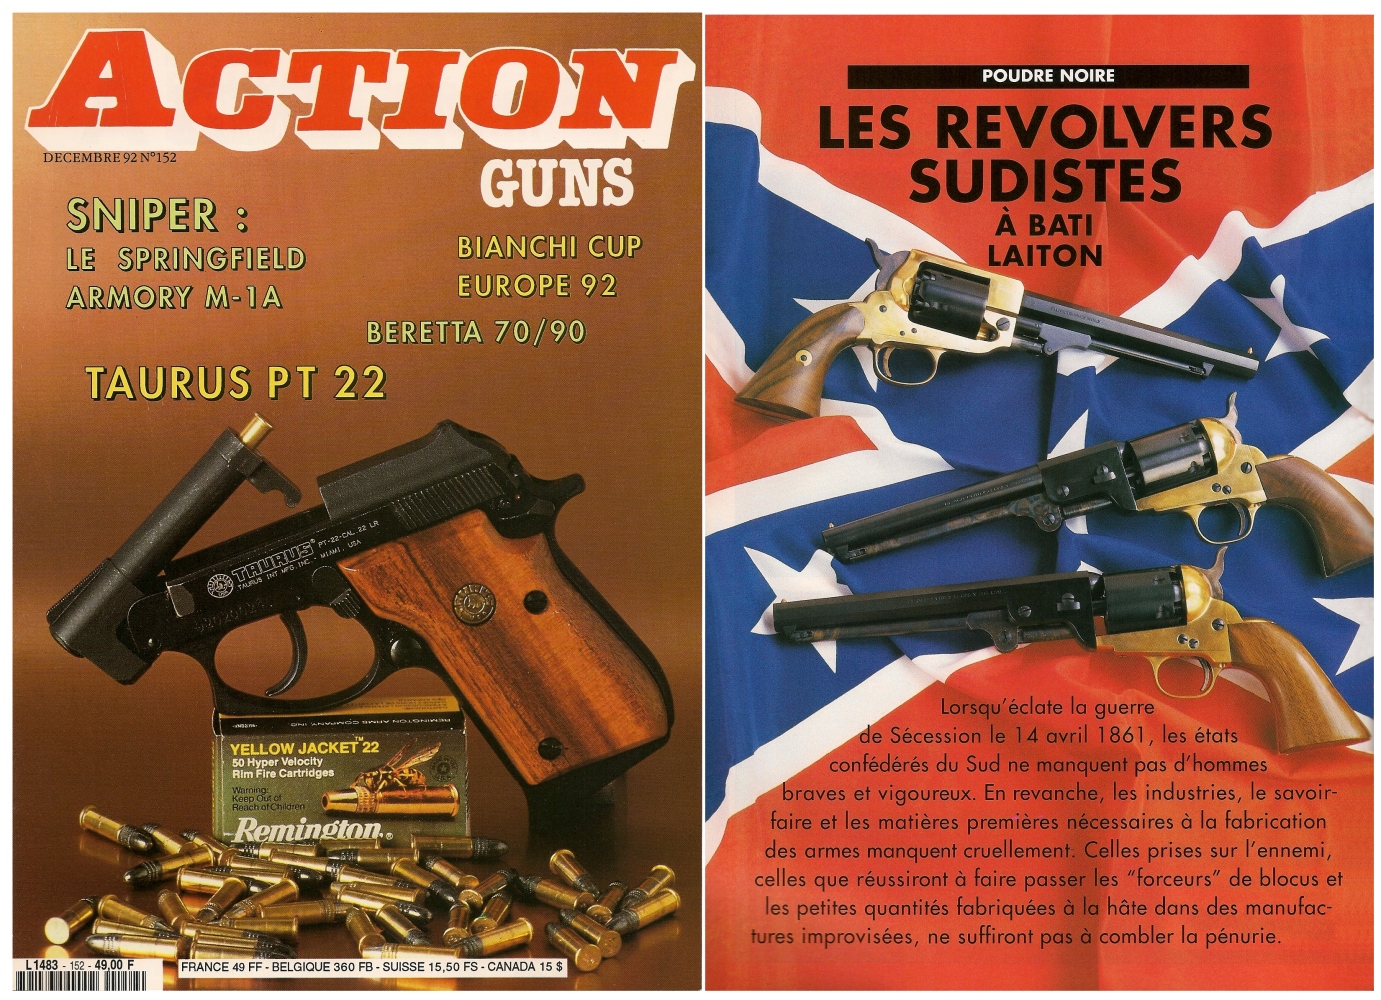 Le banc d'essai des revolvers à bâti en laiton a été publié sur 6 pages dans le magazine Action Guns n° 152 (décembre 1992). 